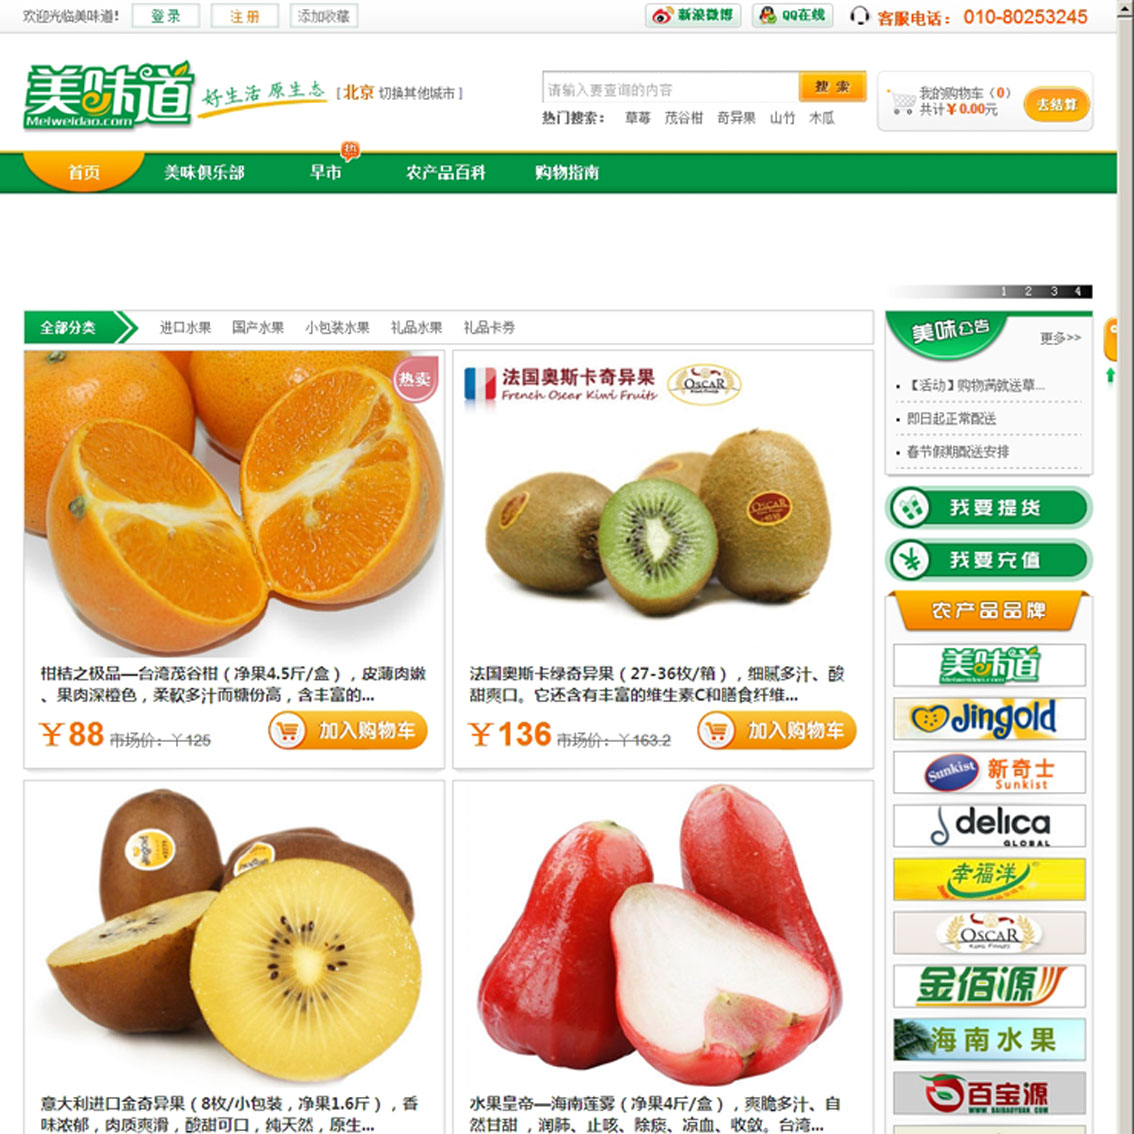 ECSHOP2.7.3美味道水果商城模版 绿色食品健